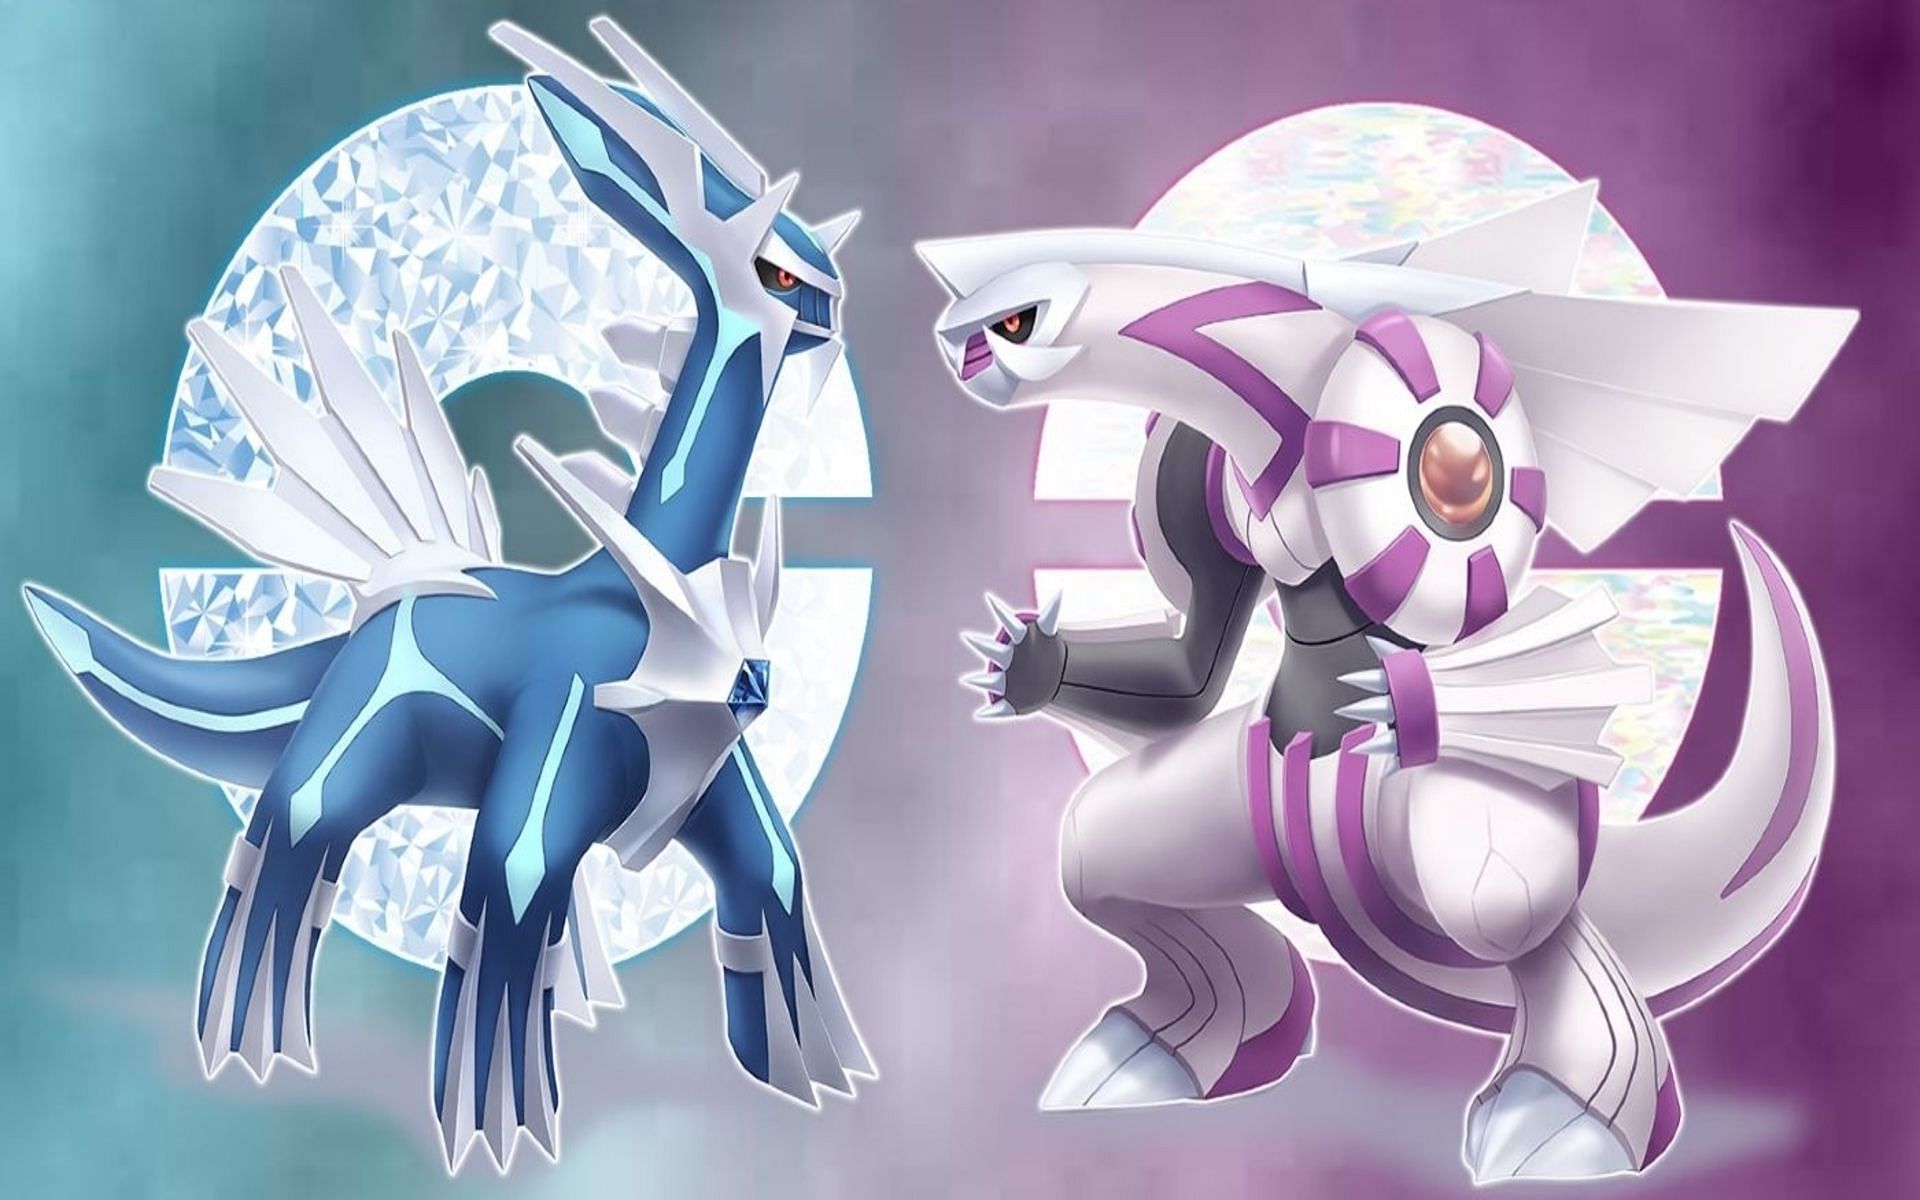 Palkia and Dialga will be found at the Spear Pillar (Image via The Pokemon Company)